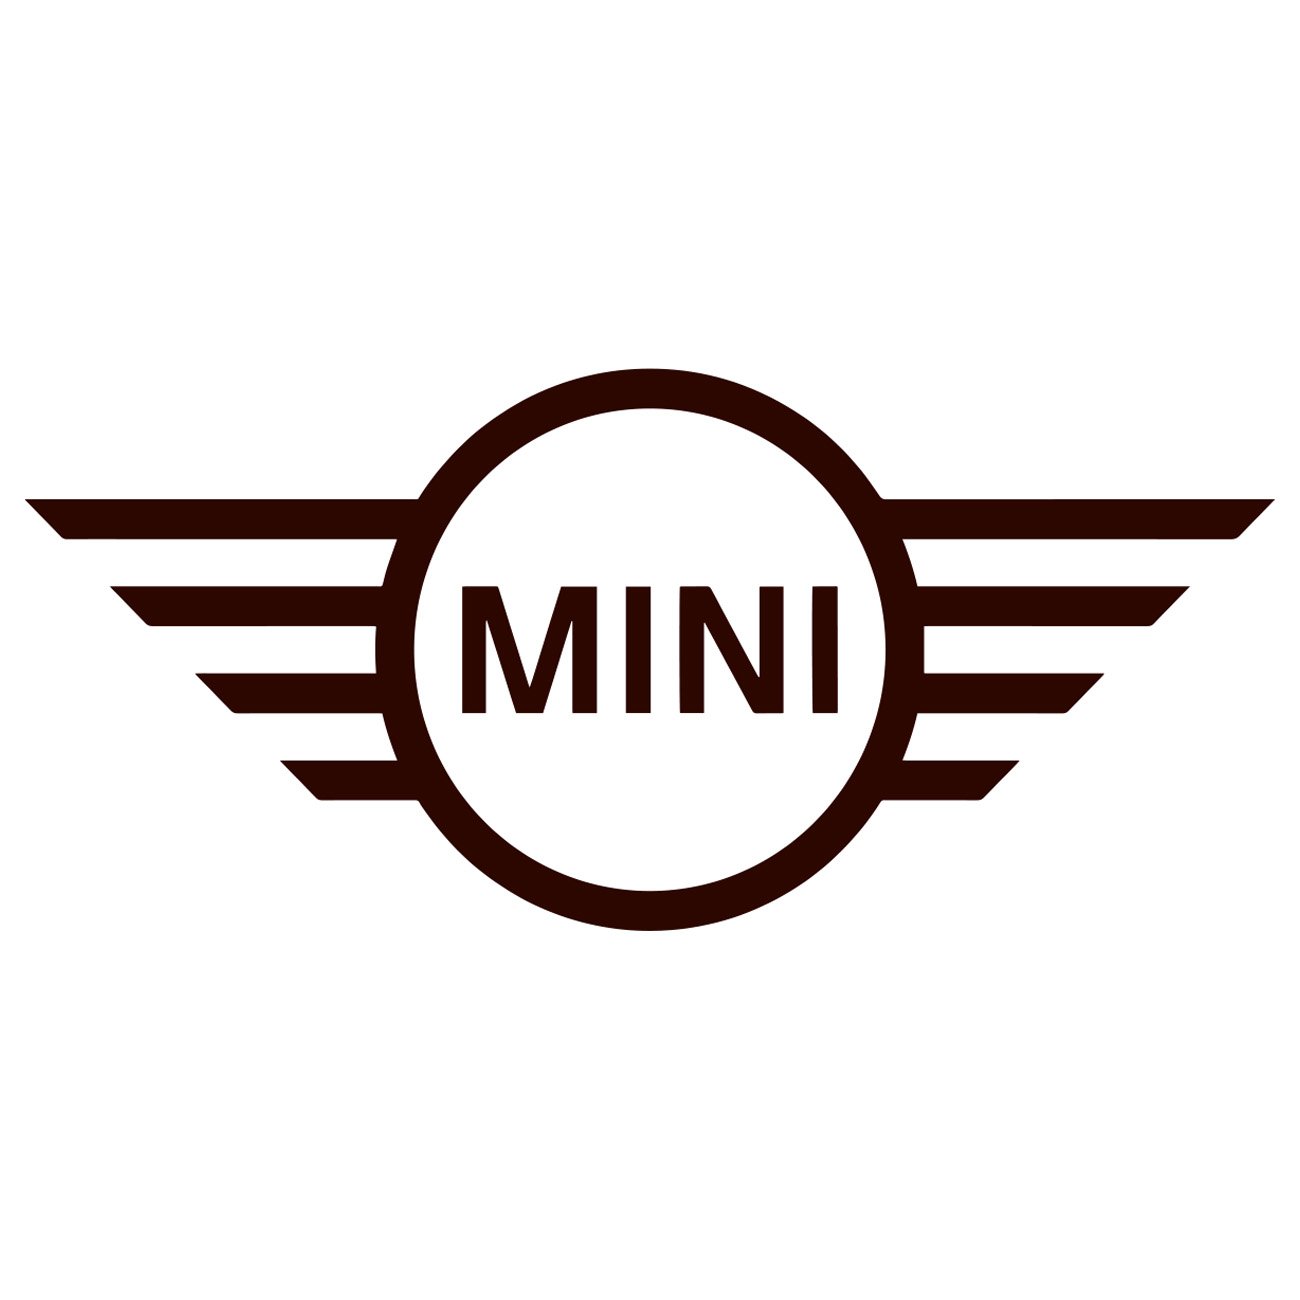 Morris mini logo